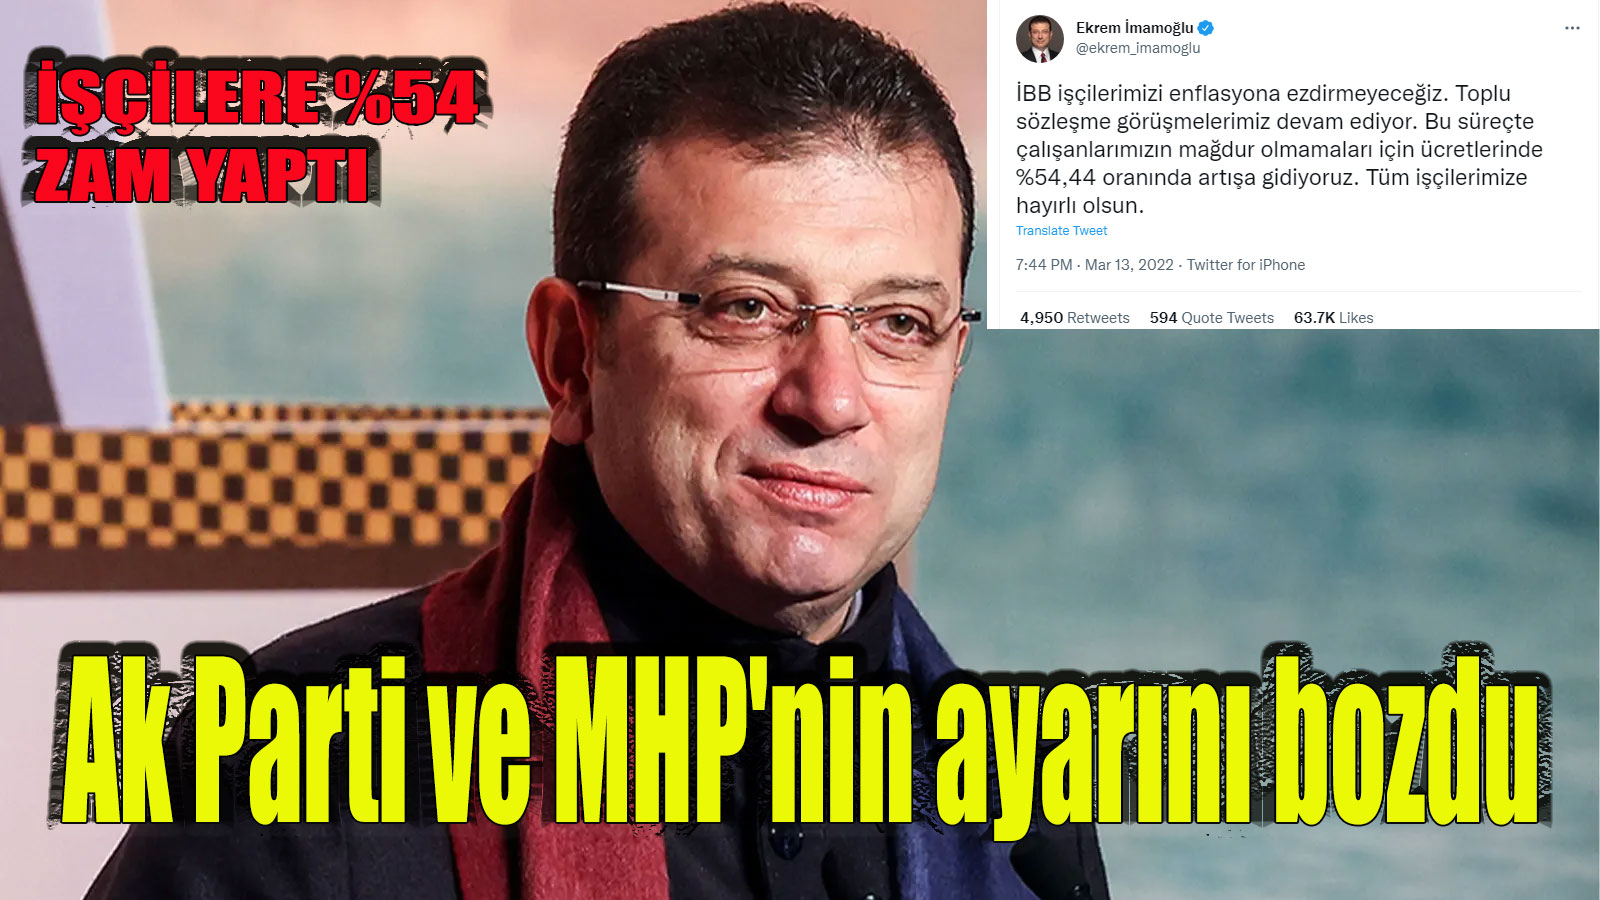 Başkan Ekrem İmamoğlu’ndan yüzde 54 zam, İşçileri sevindirdi! Ak Parti ve MHP’nin ayarını bozdu!